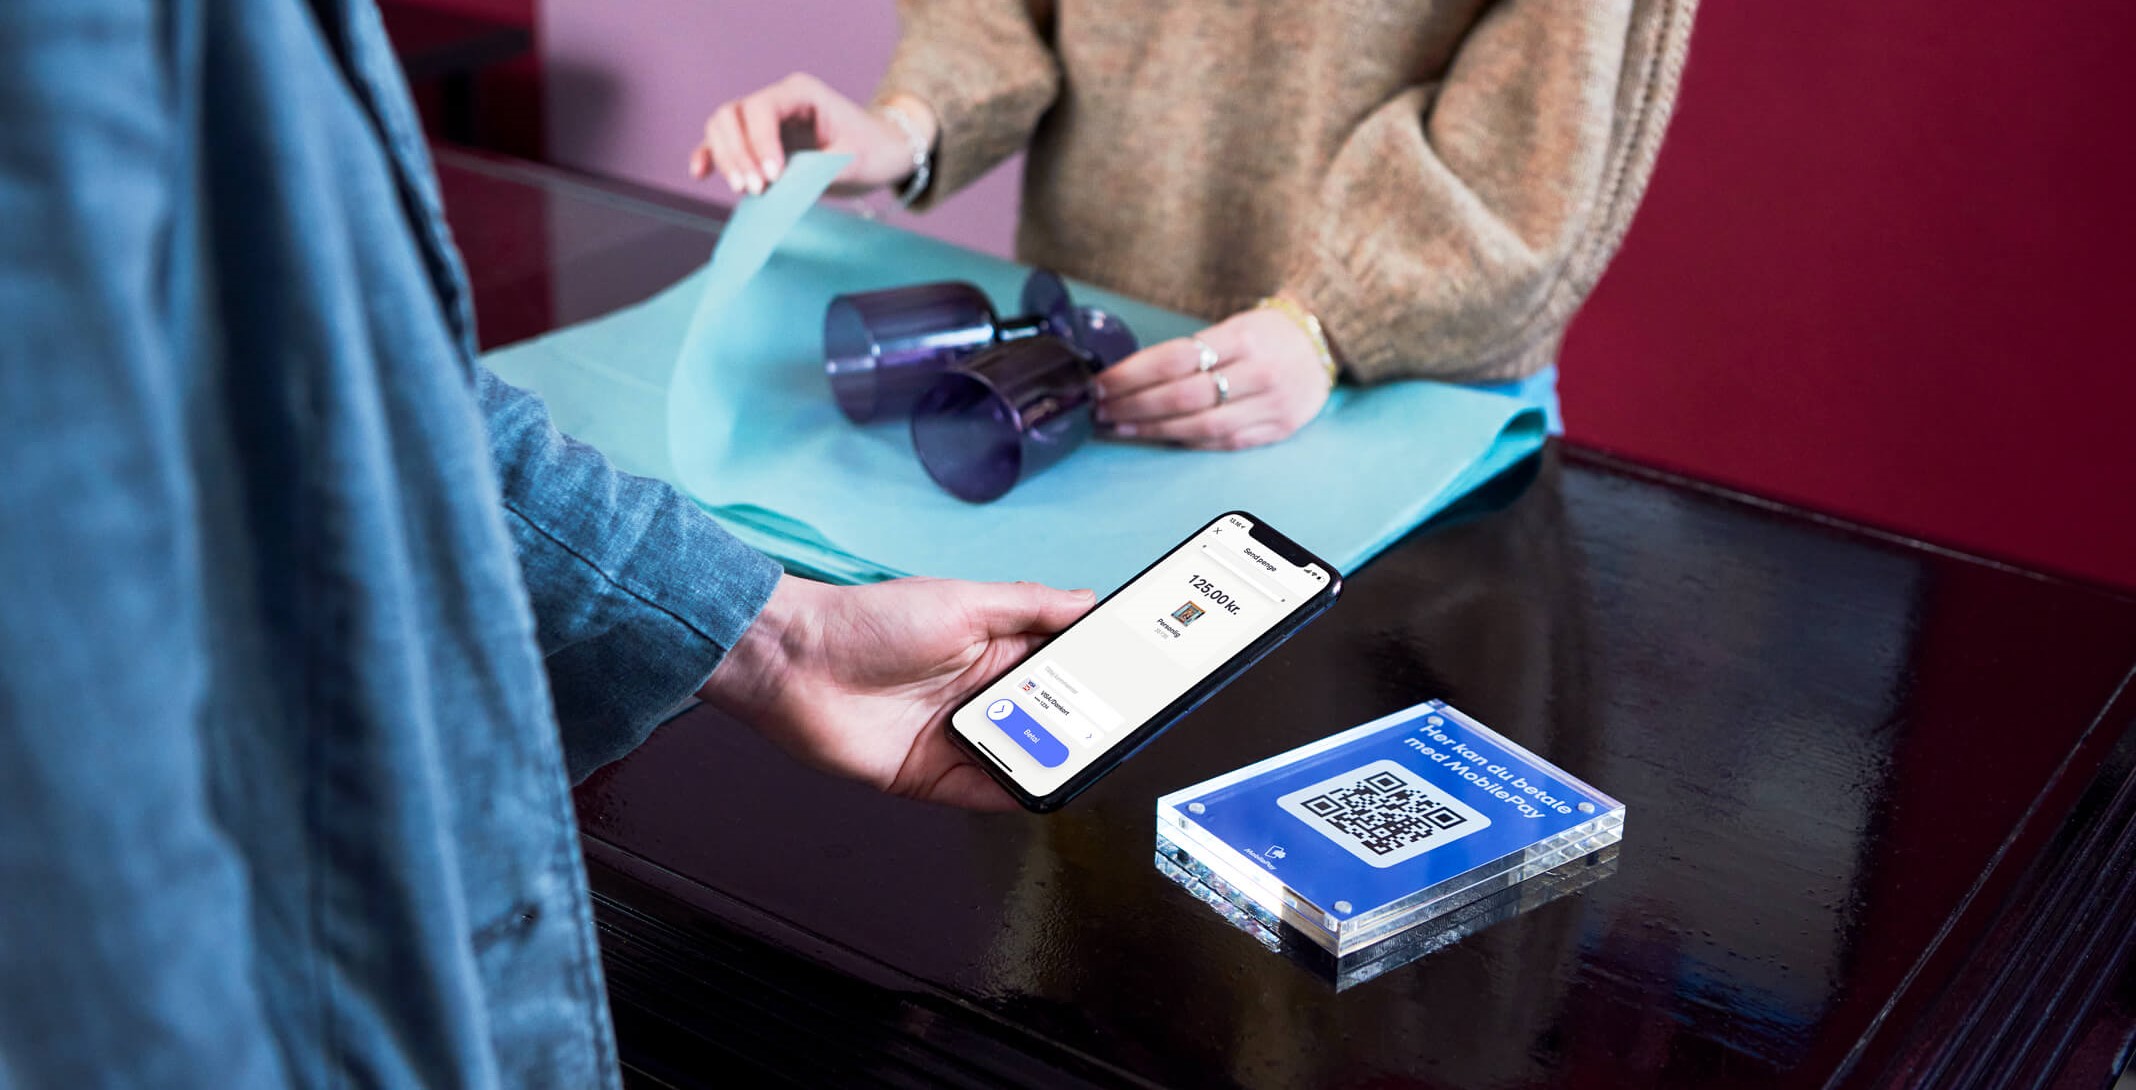 Billede som viser MobilePay-betaling via QR-kode i en interiør butik.